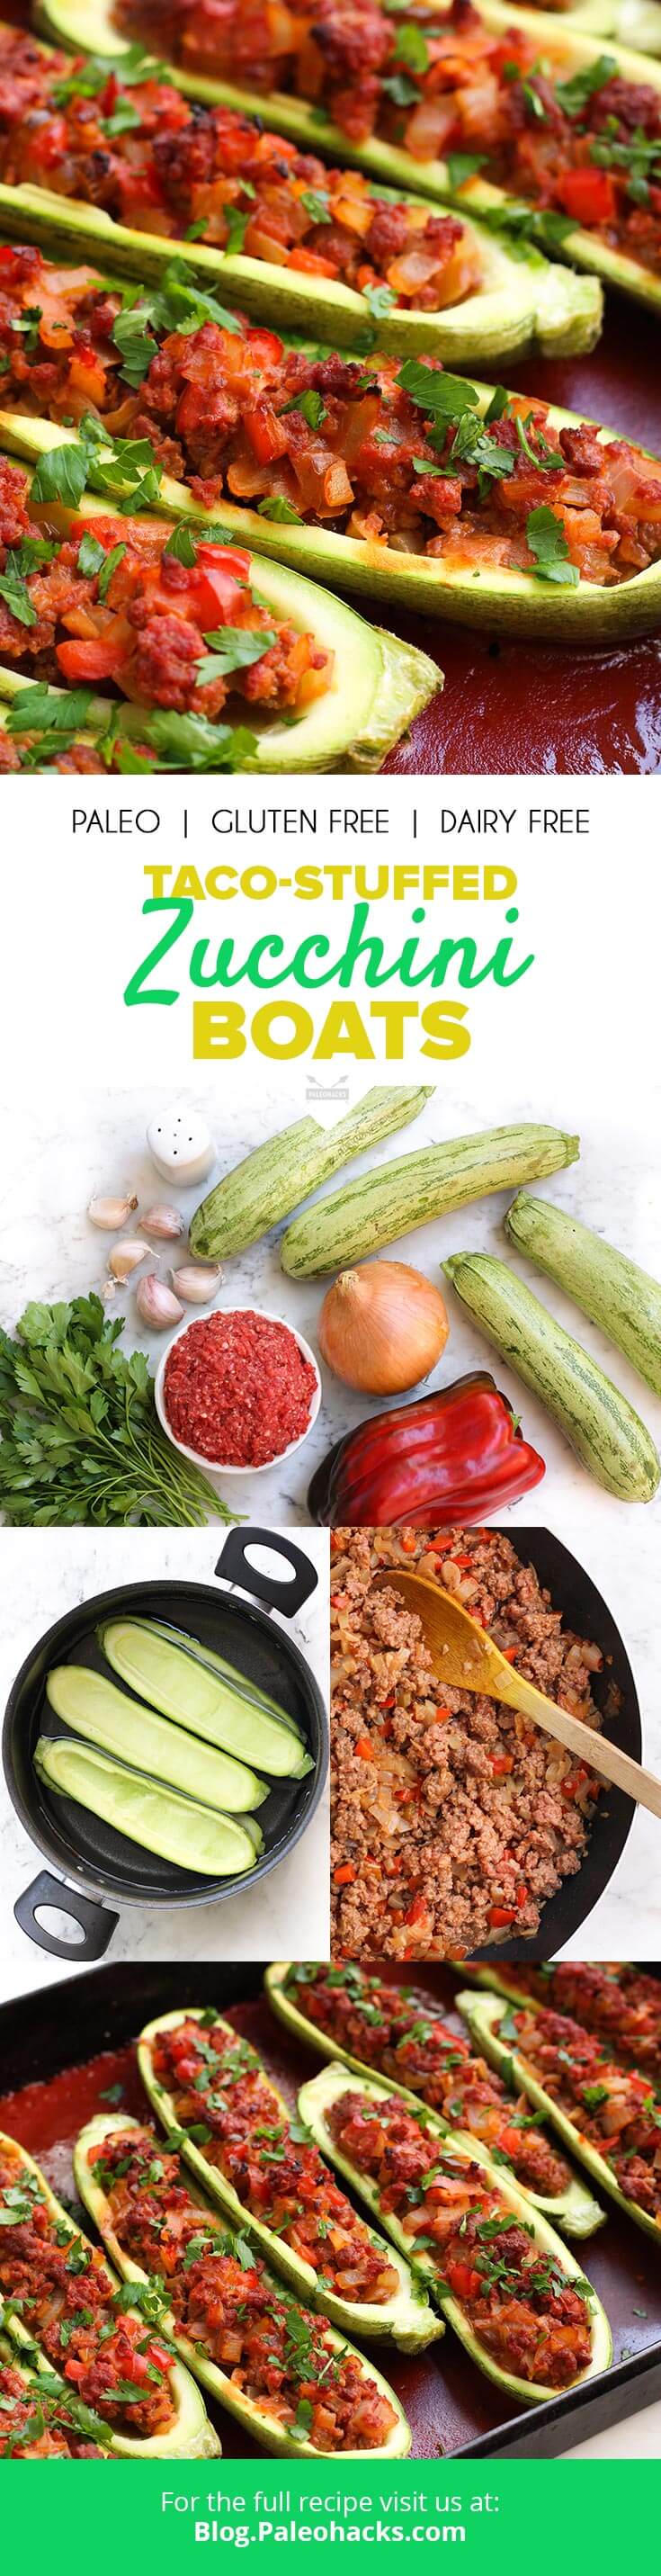 zucchini boats pin